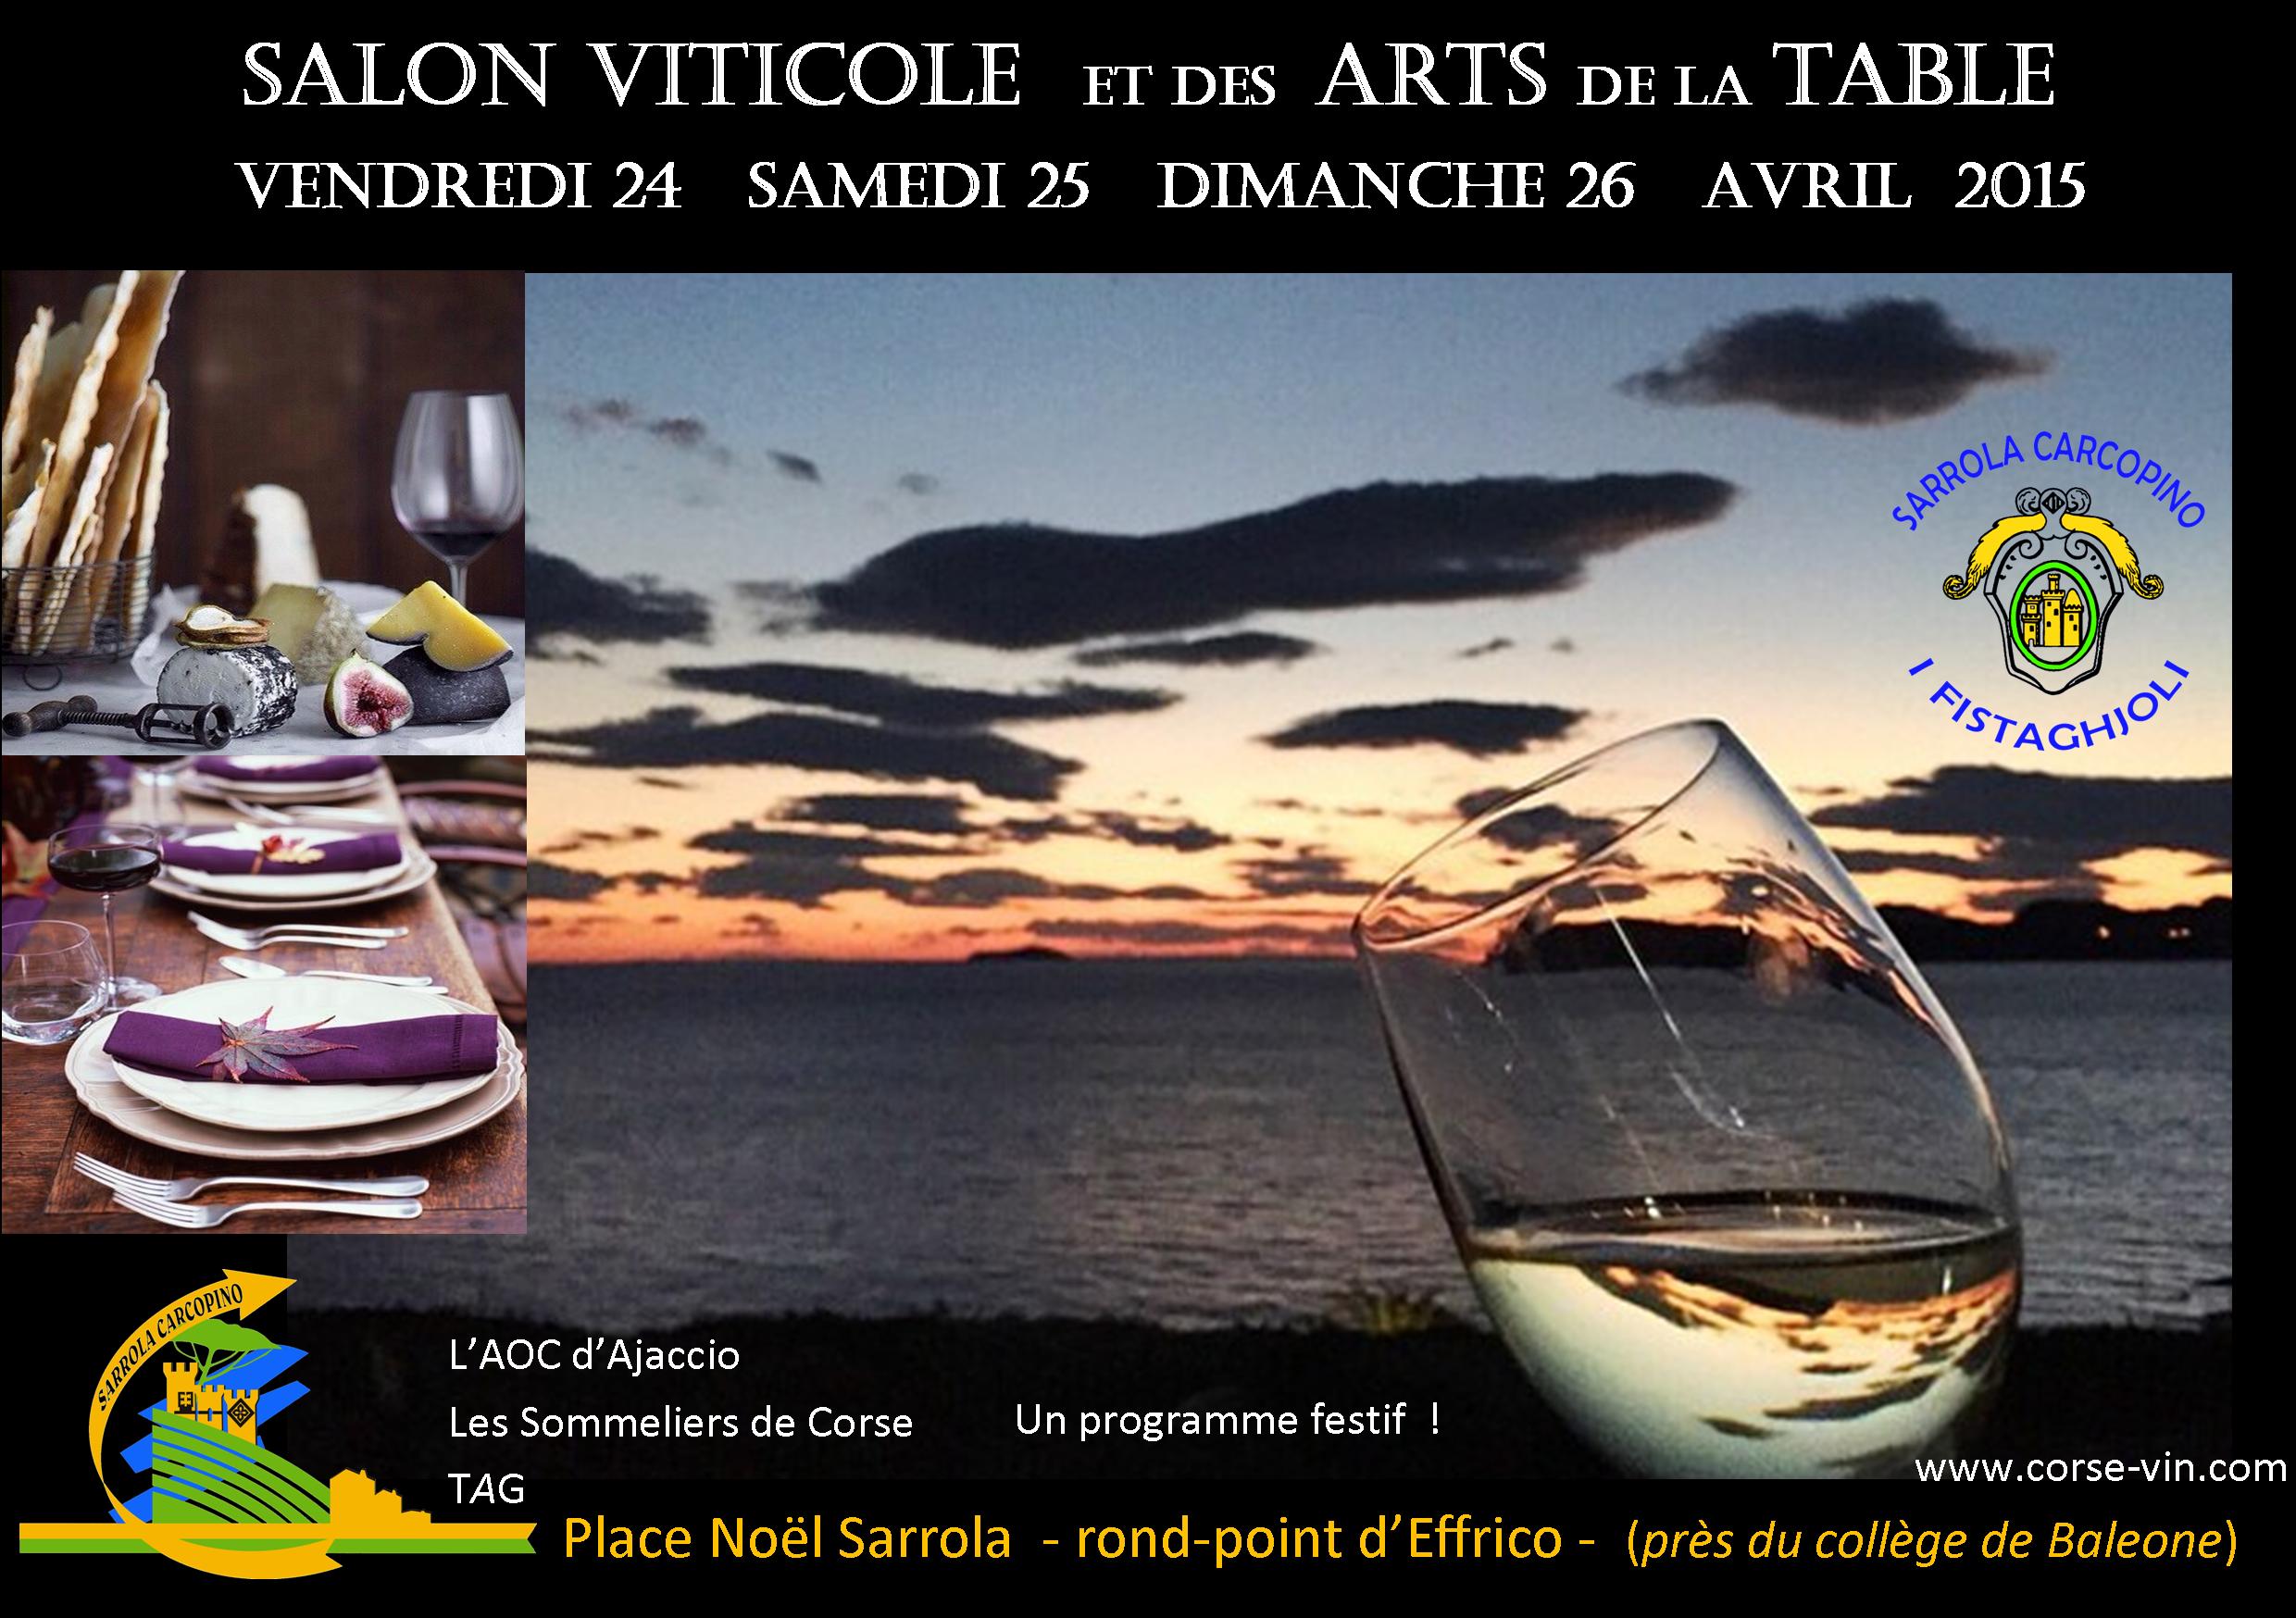 Sarrola-Carcopino : Le Salon viticole et des arts de la table ouvre vendredi